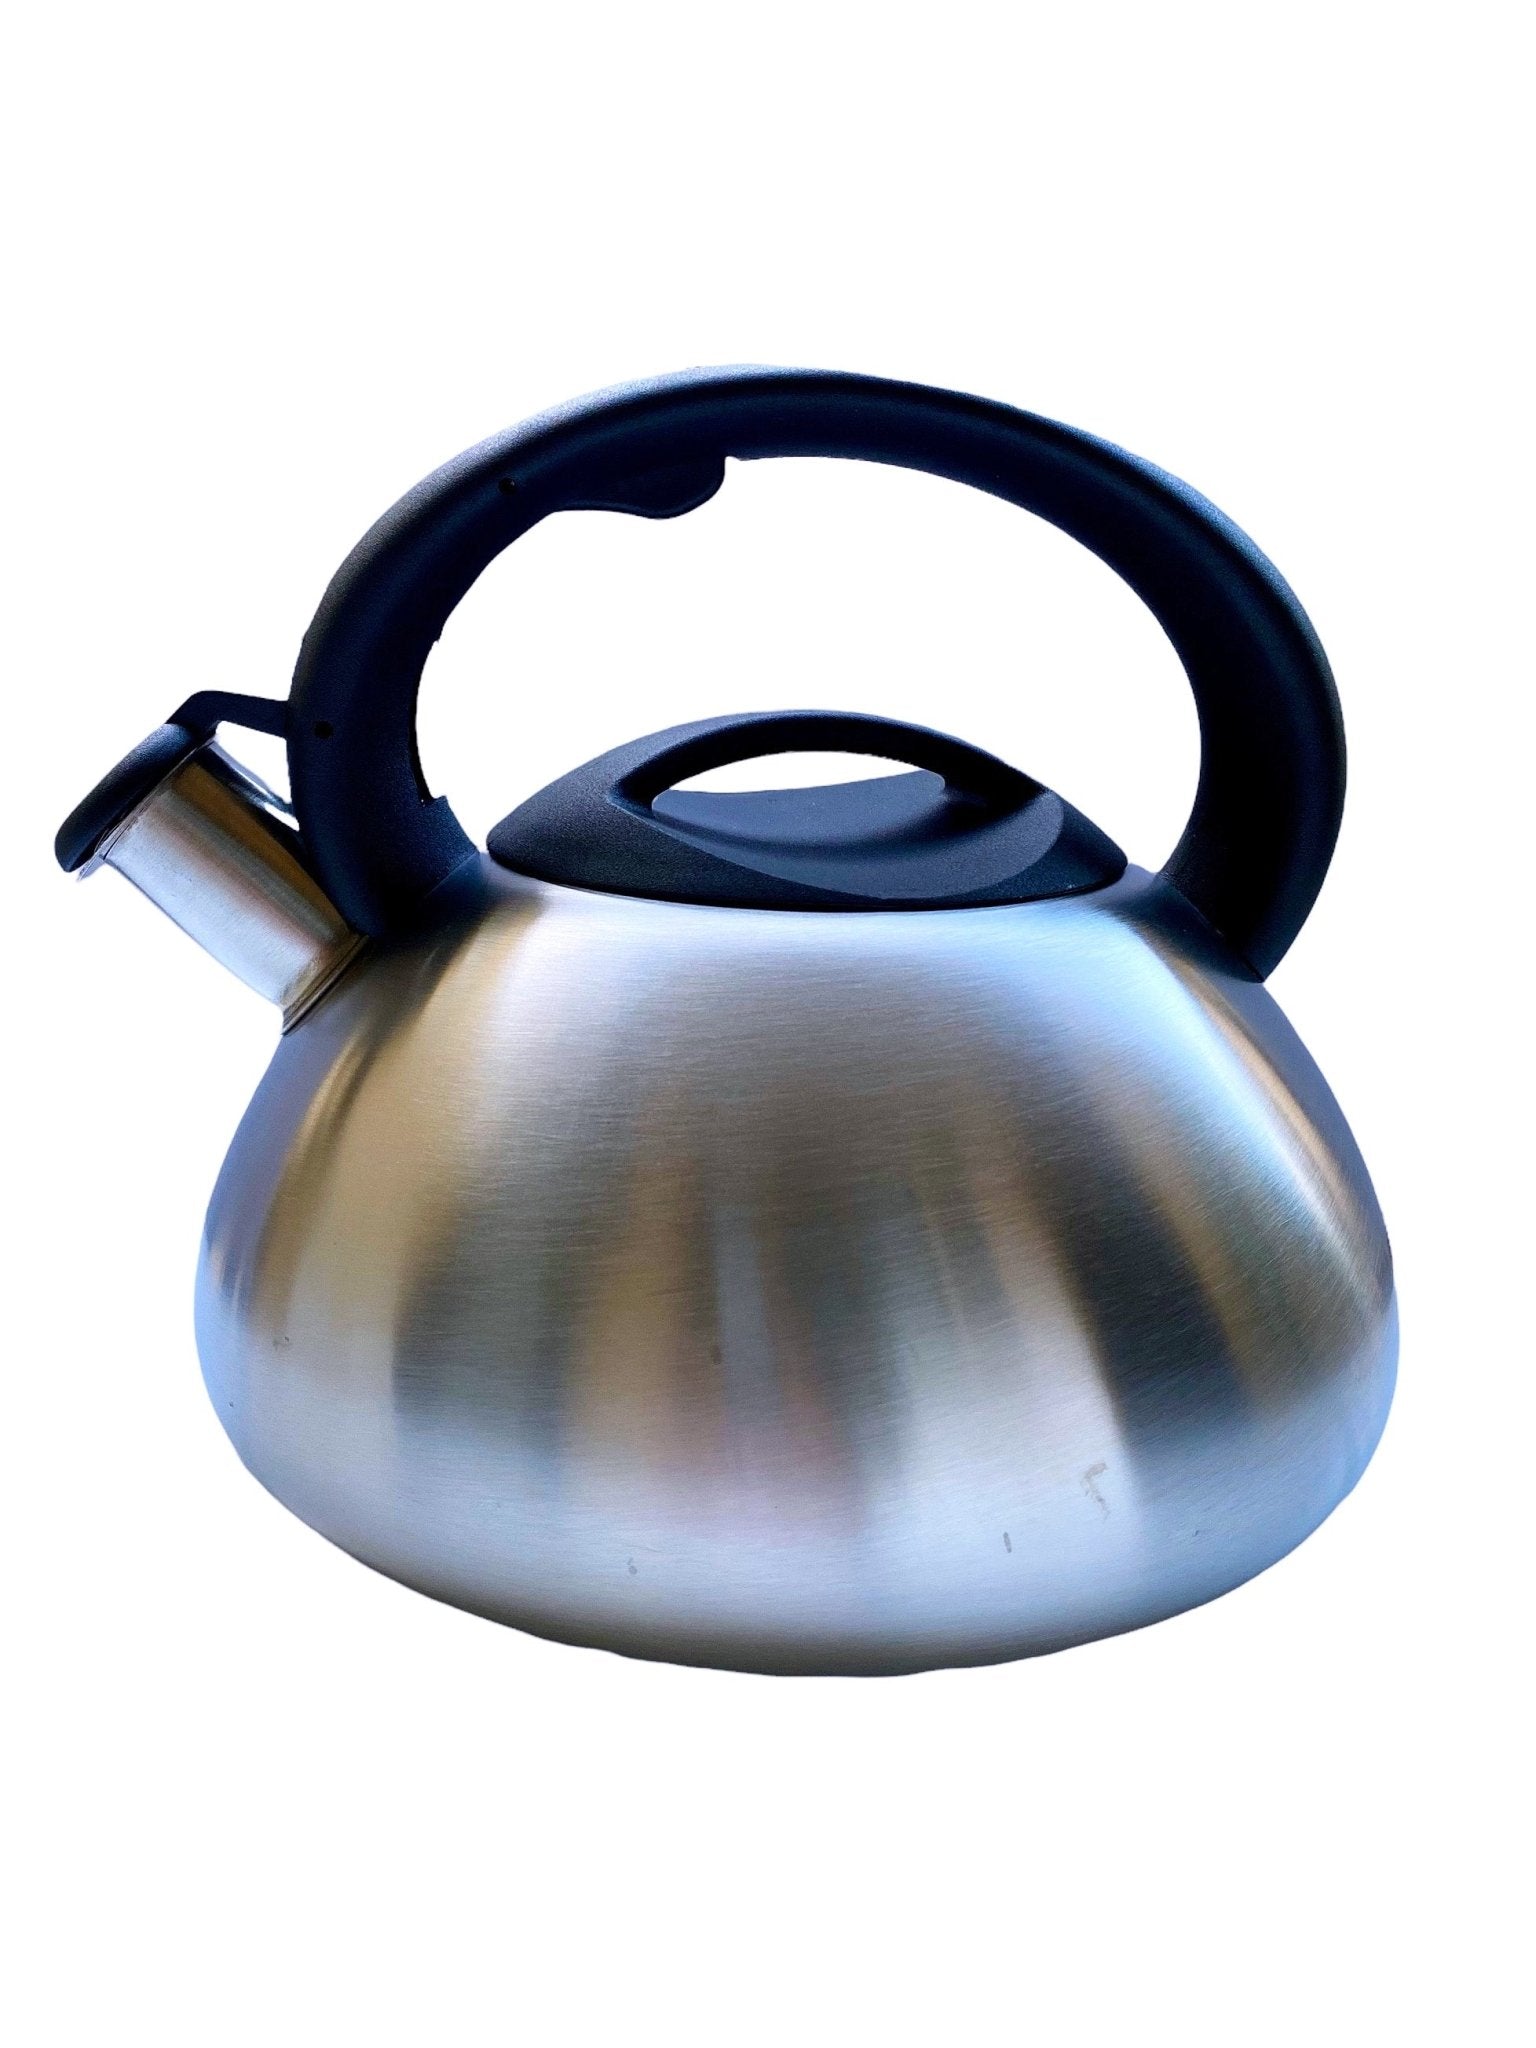 Whistling Tea Kettle Stainless Steel - Golden Gait Mercantile